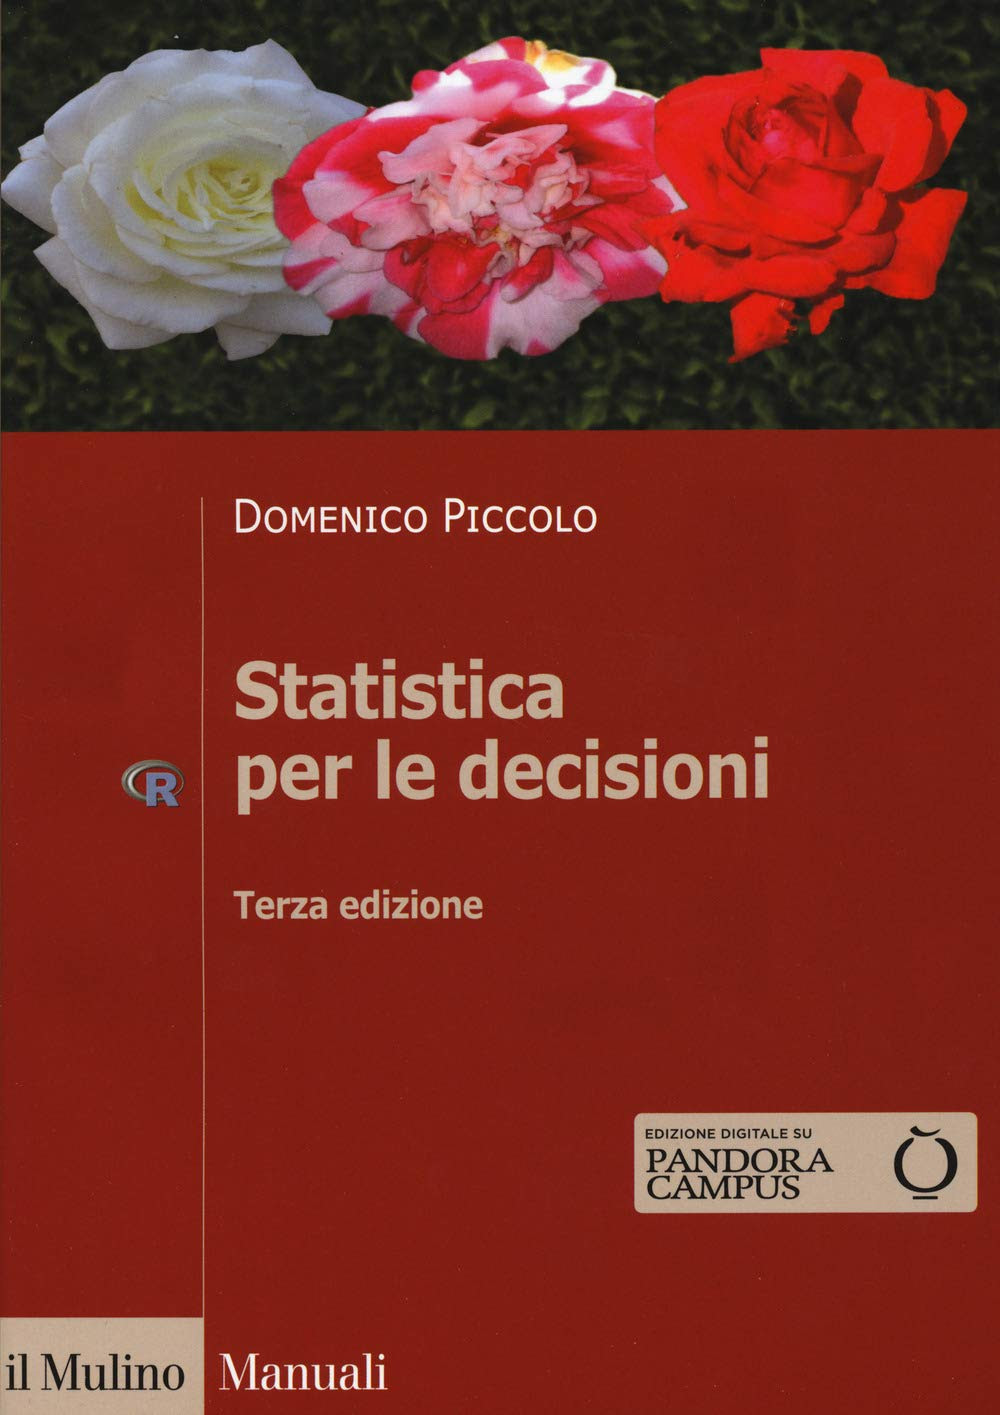 Statistica per le decisioni. La conoscenza umana sostenuta dall'evidenza empirica in Kindle/PDF/EPUB